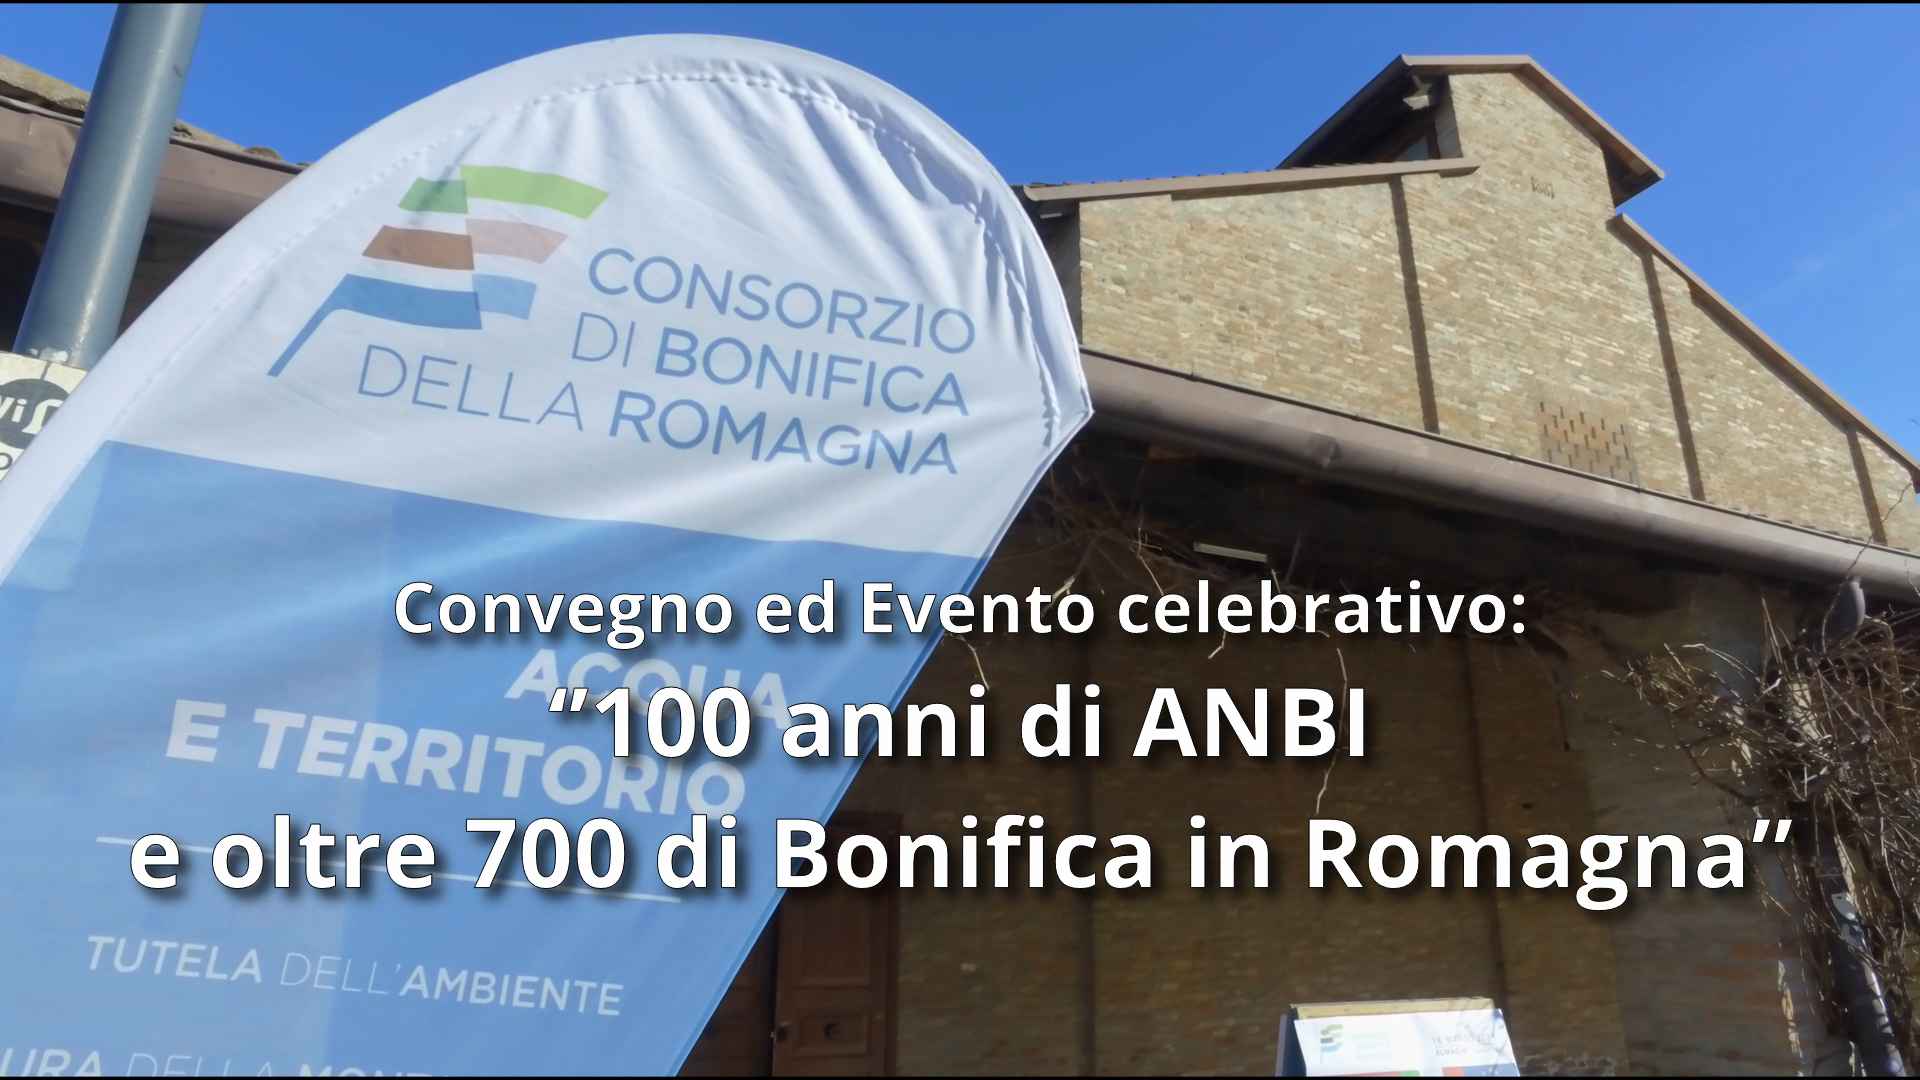 100 anni di ANBI e oltre 700 di Bonifica in romagna: Convegno ed evento celebrativo